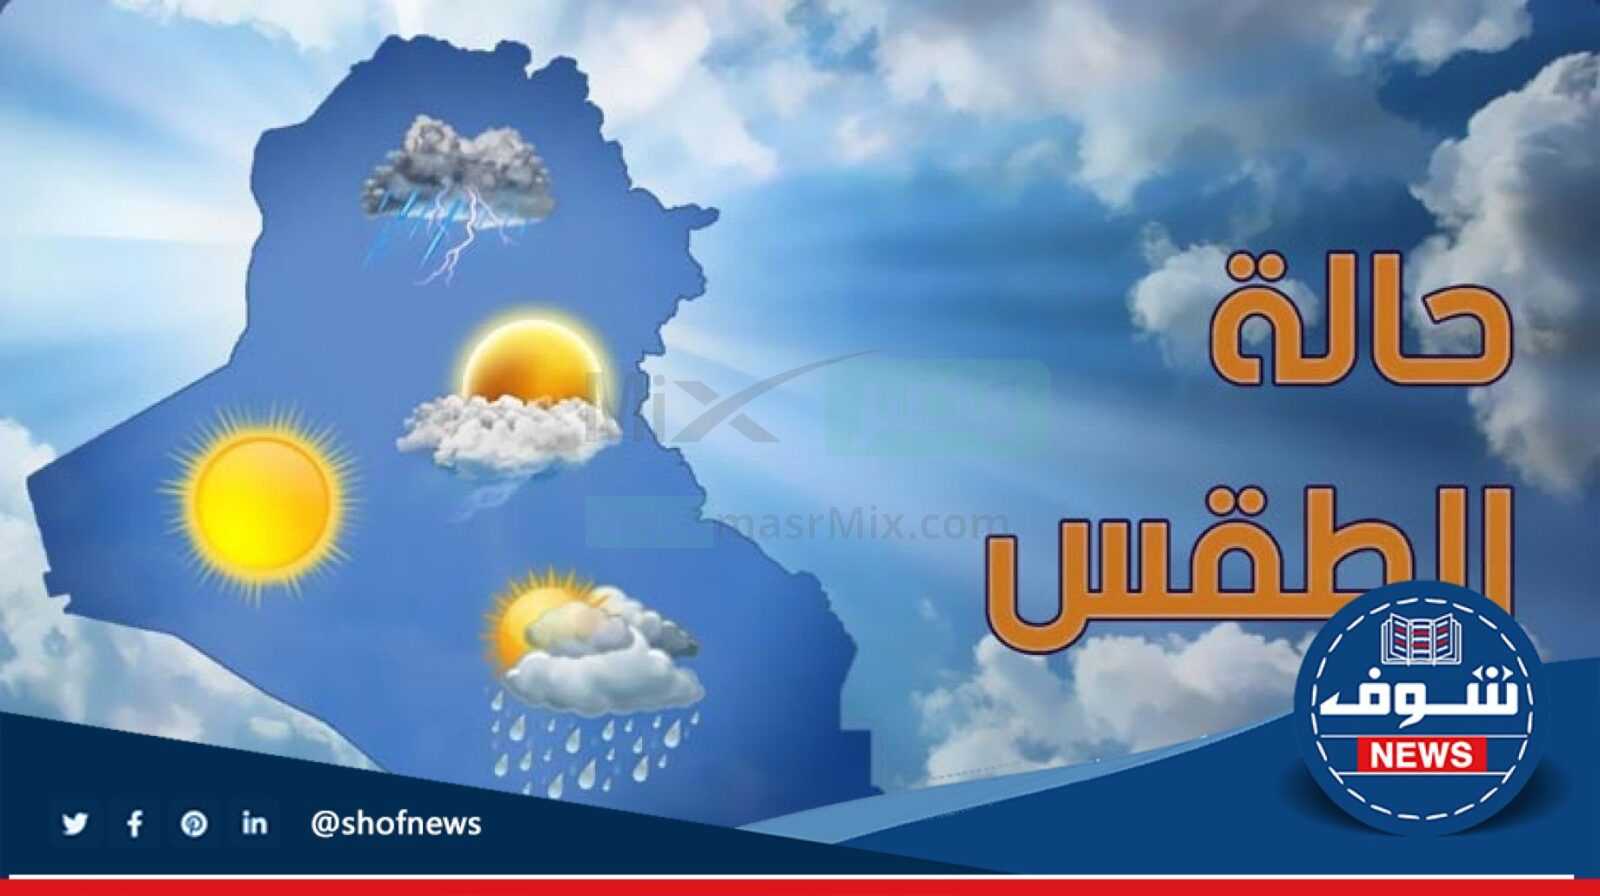 “حالة الطقس” درجات الحرارة المتوقعة غدا ولمدة 6 أيام القادمة في مصر يناير 2023